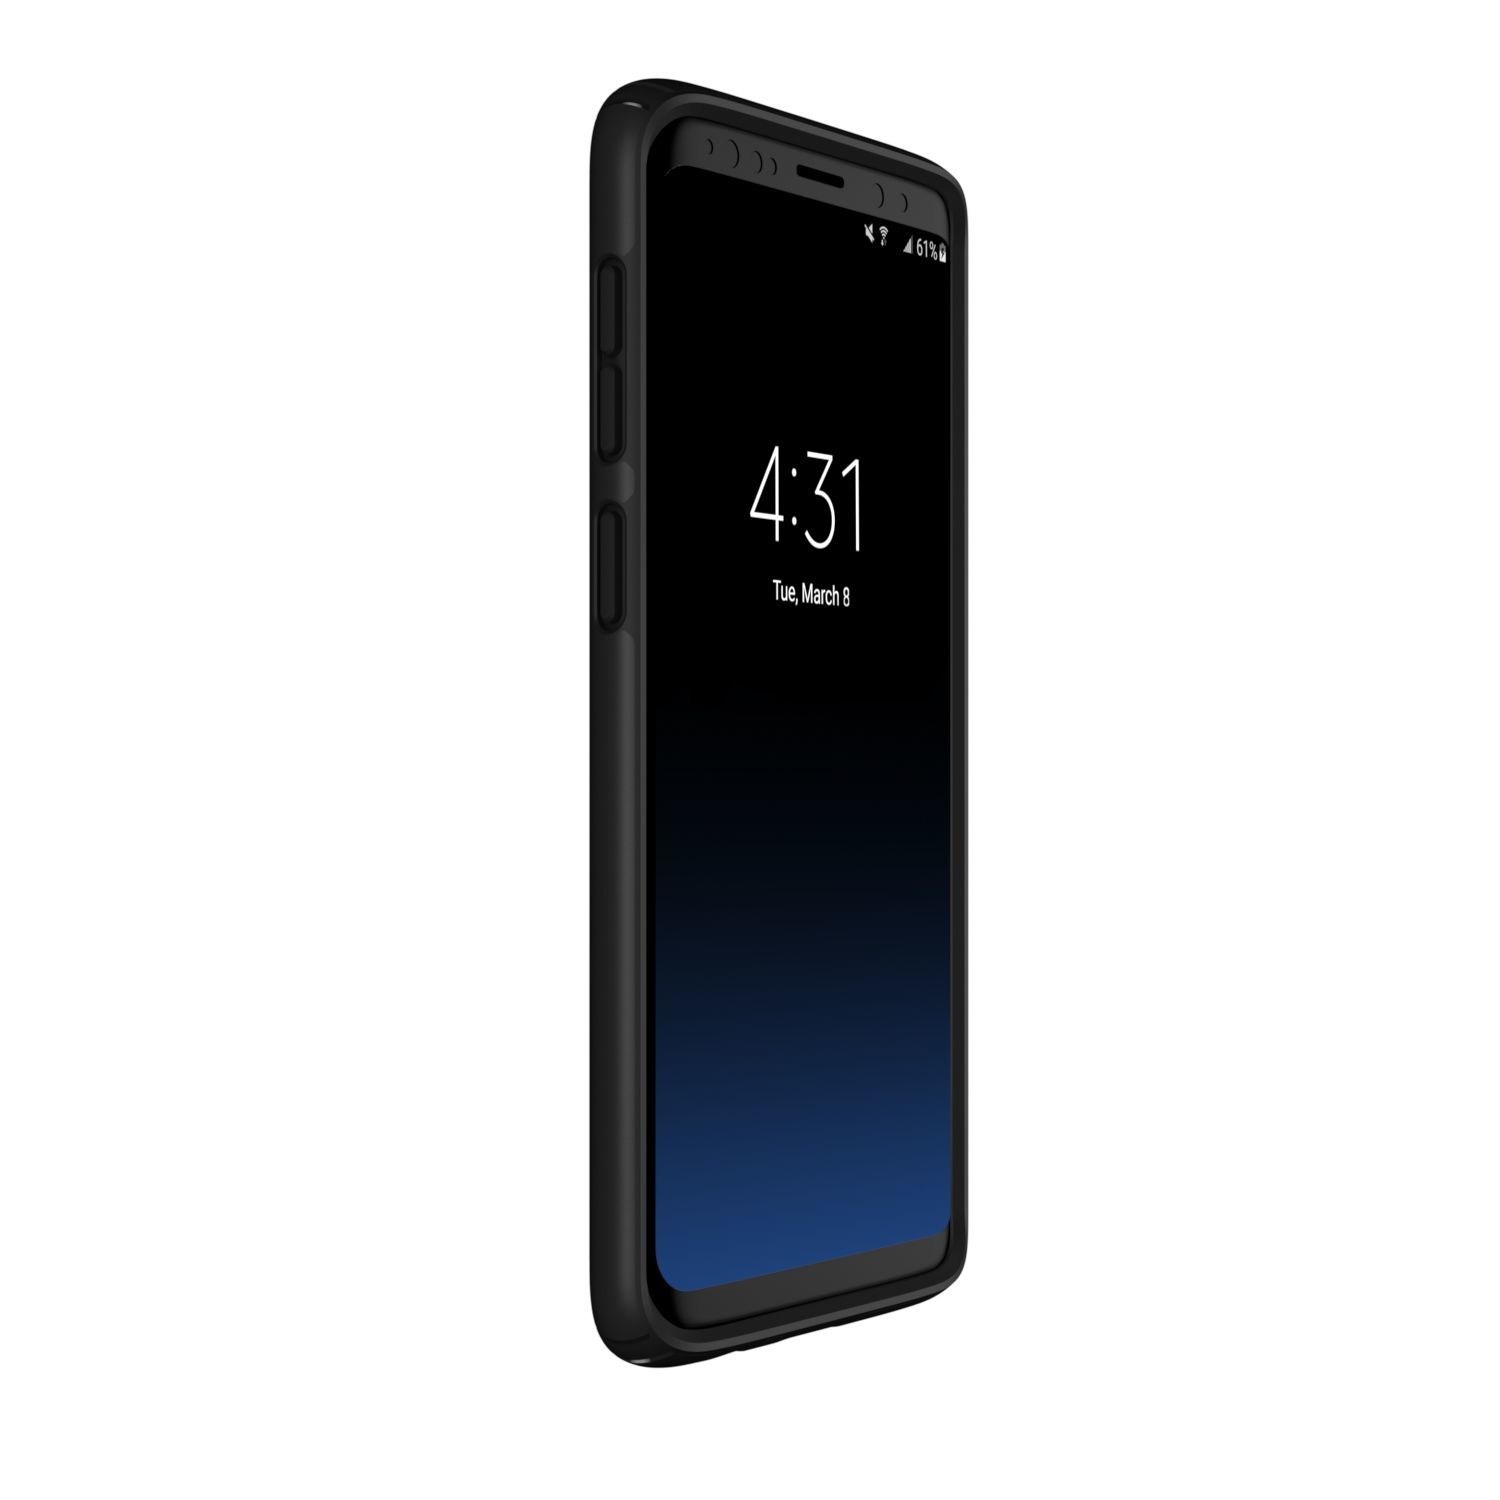 Speck Presidio Samsung Galaxy S9 Tough Case - Black